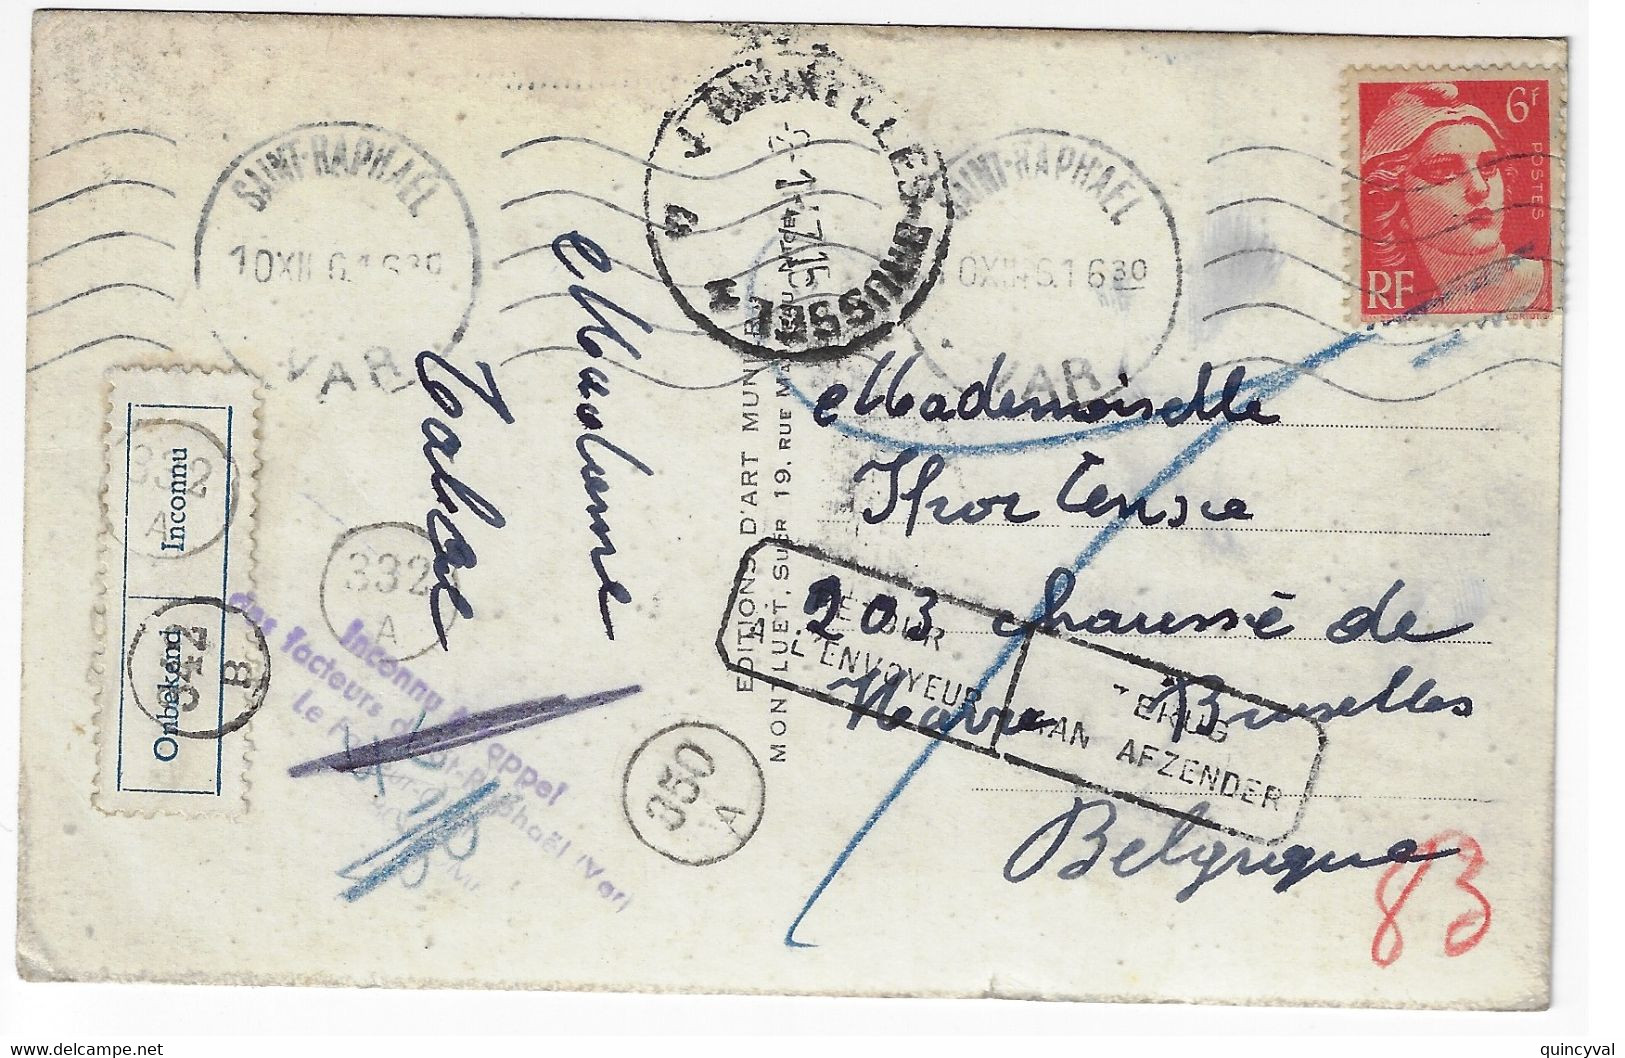 St RAPHAEL Carte Postale Dest Belgique Gandon 6 F Rouge Yv 721  Retour Envoyeur Belge Tampon Etiquette Bilingue Ob 1946 - Cartas & Documentos